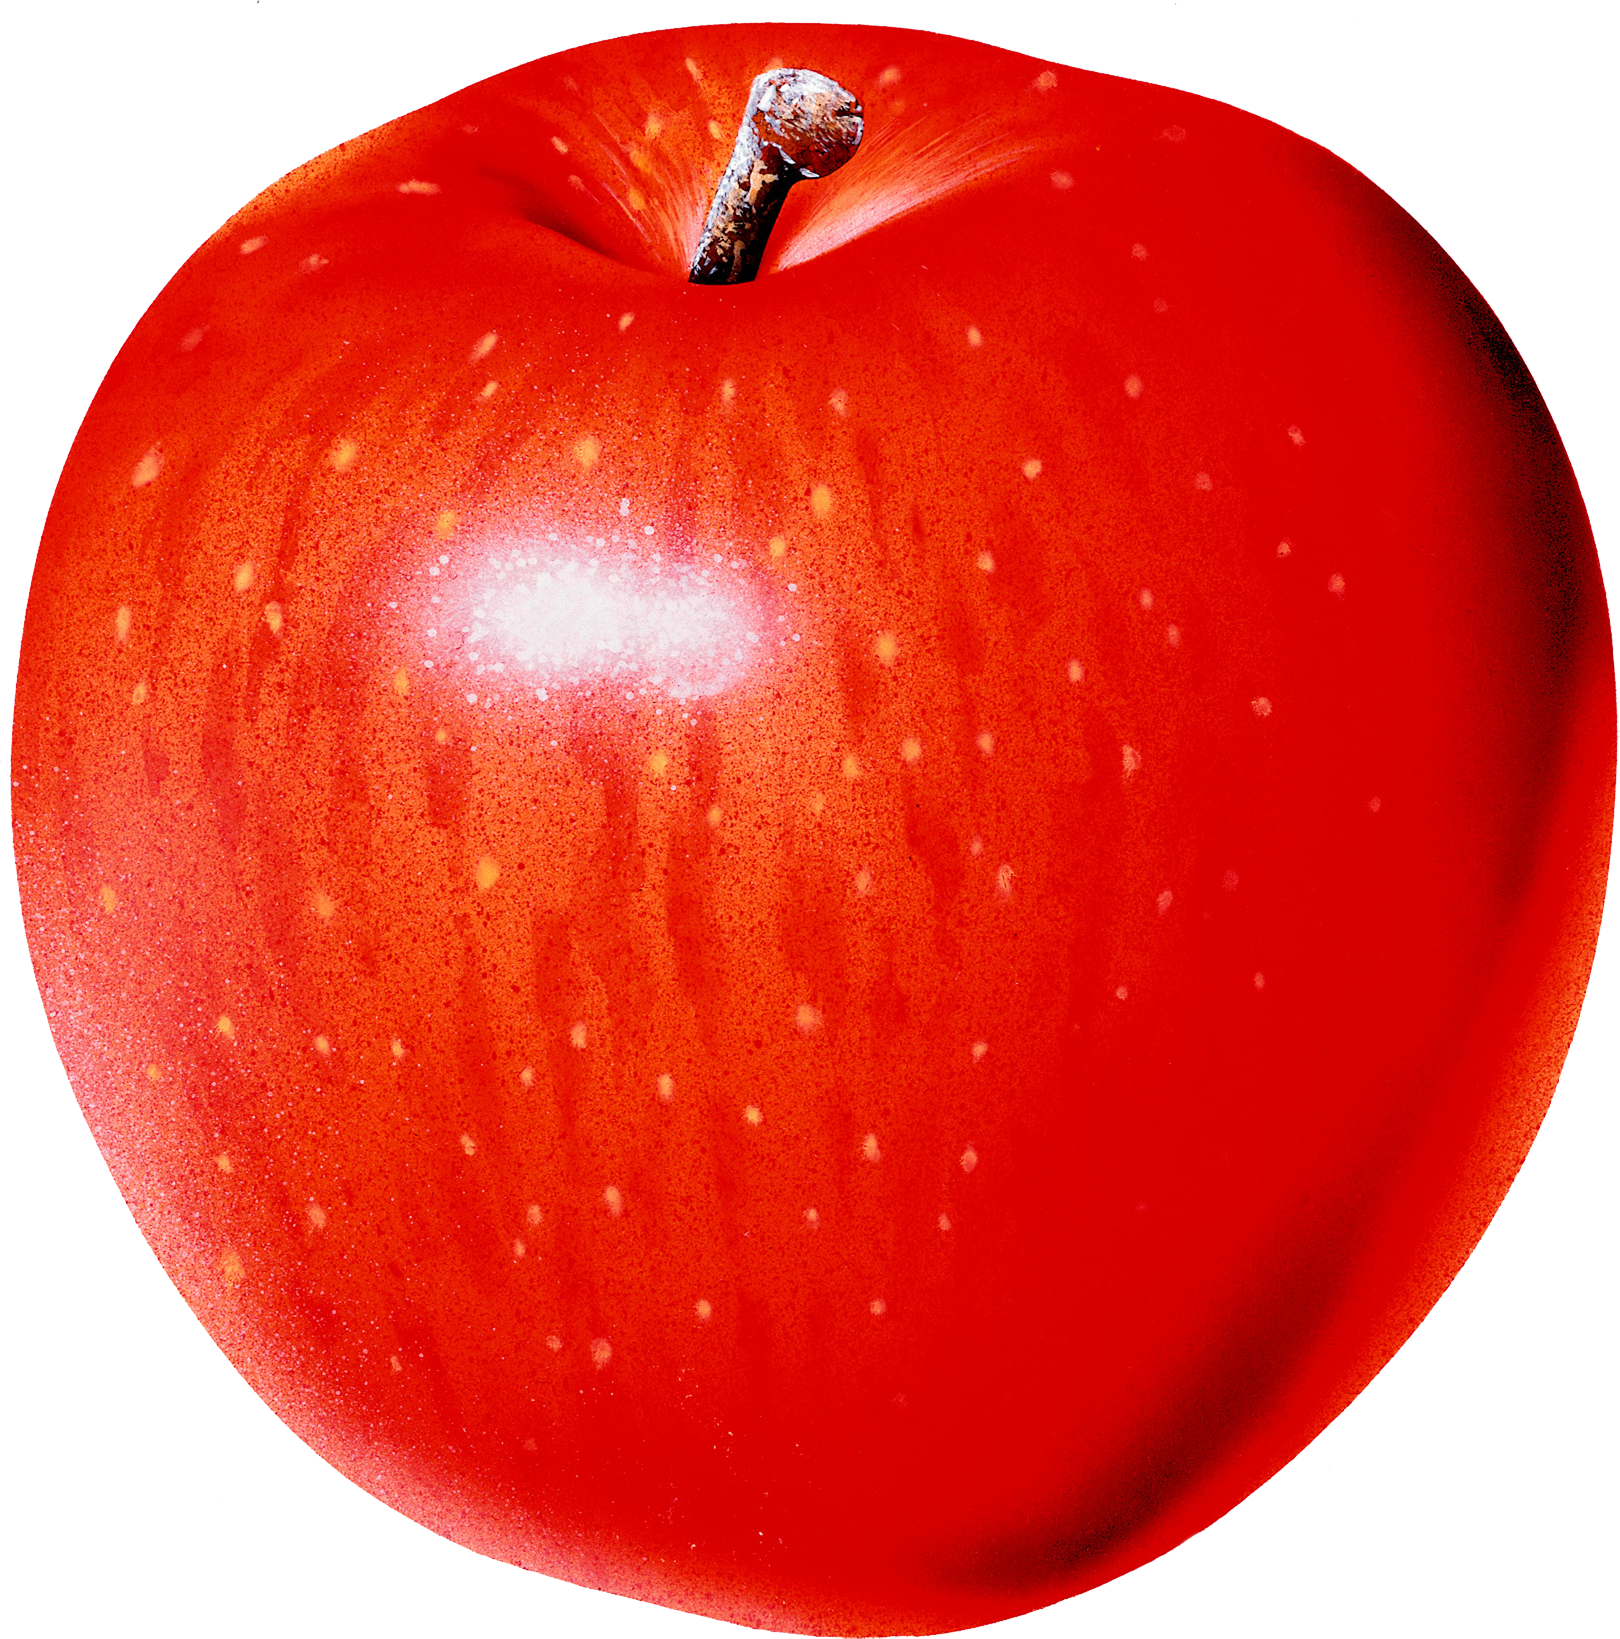 Какова калорийность одного красного яблока?